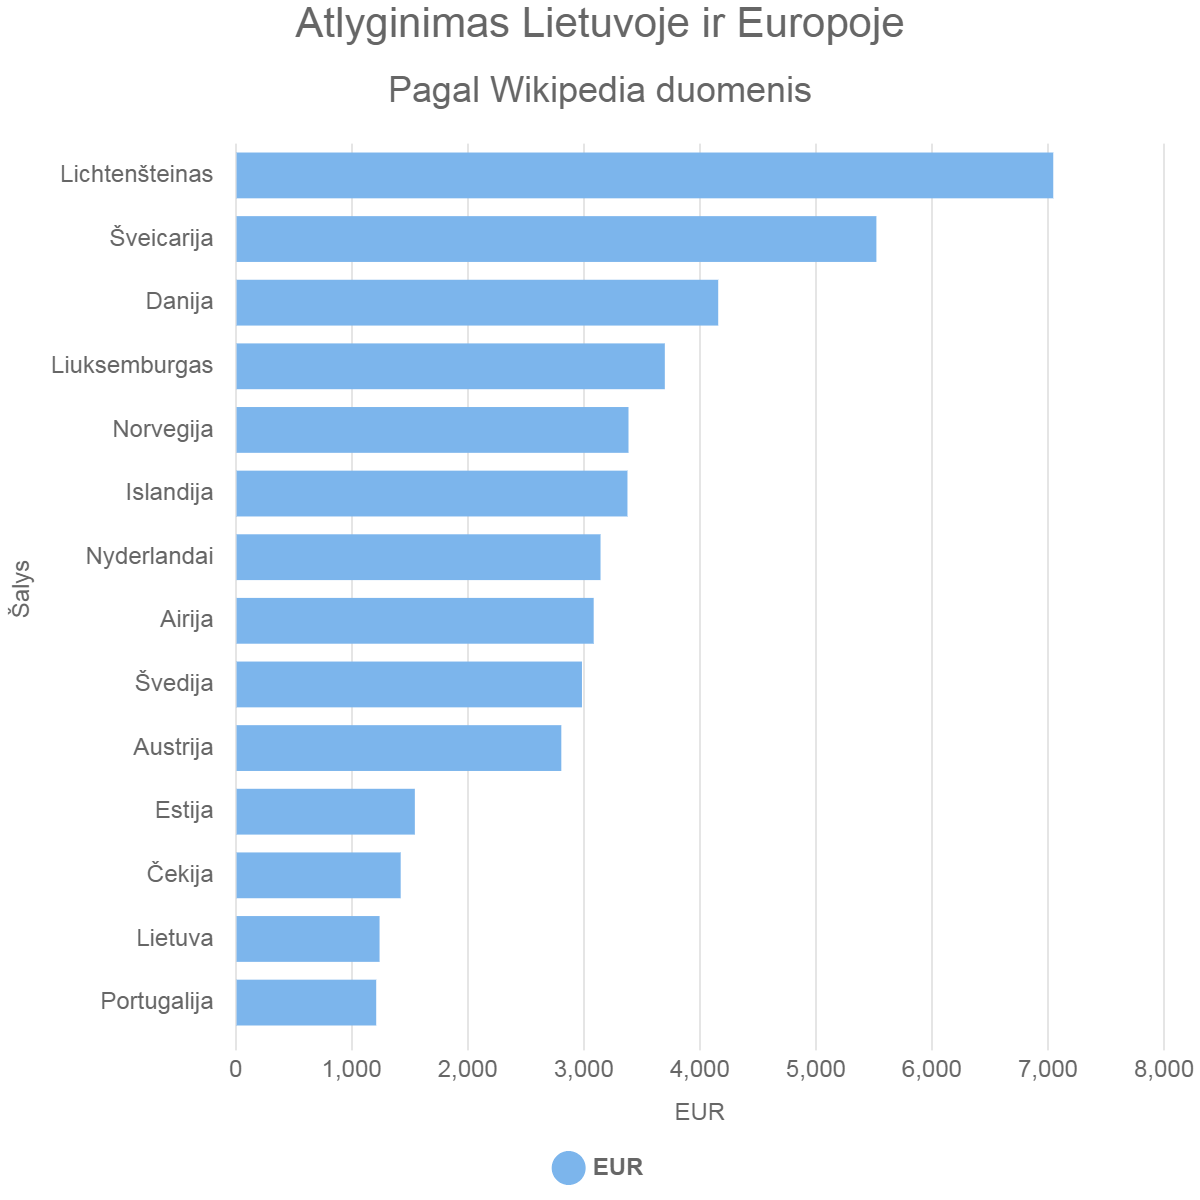 Atlyginimas Lietuvoje ir Europoje